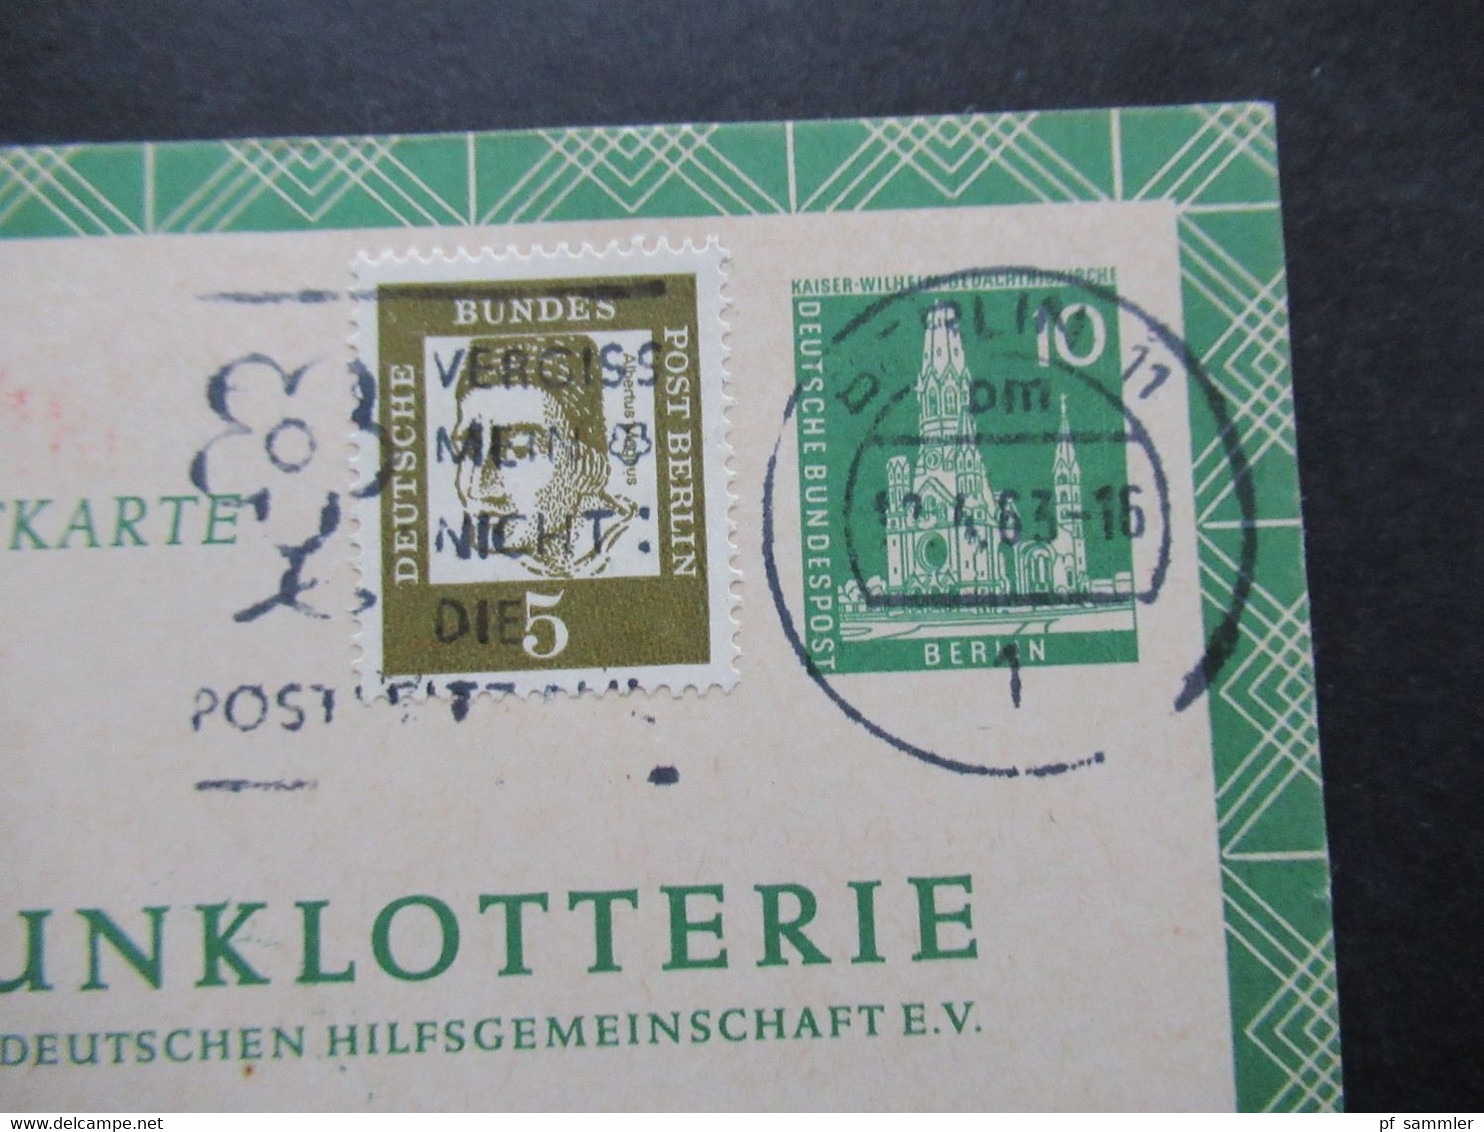 Berlin 1961 Funklotterie Postkarte FP 5 Mit Zusatzfrankatur Bedeutende Deutsche Sonderfrage Struwelpeter - Briefe U. Dokumente